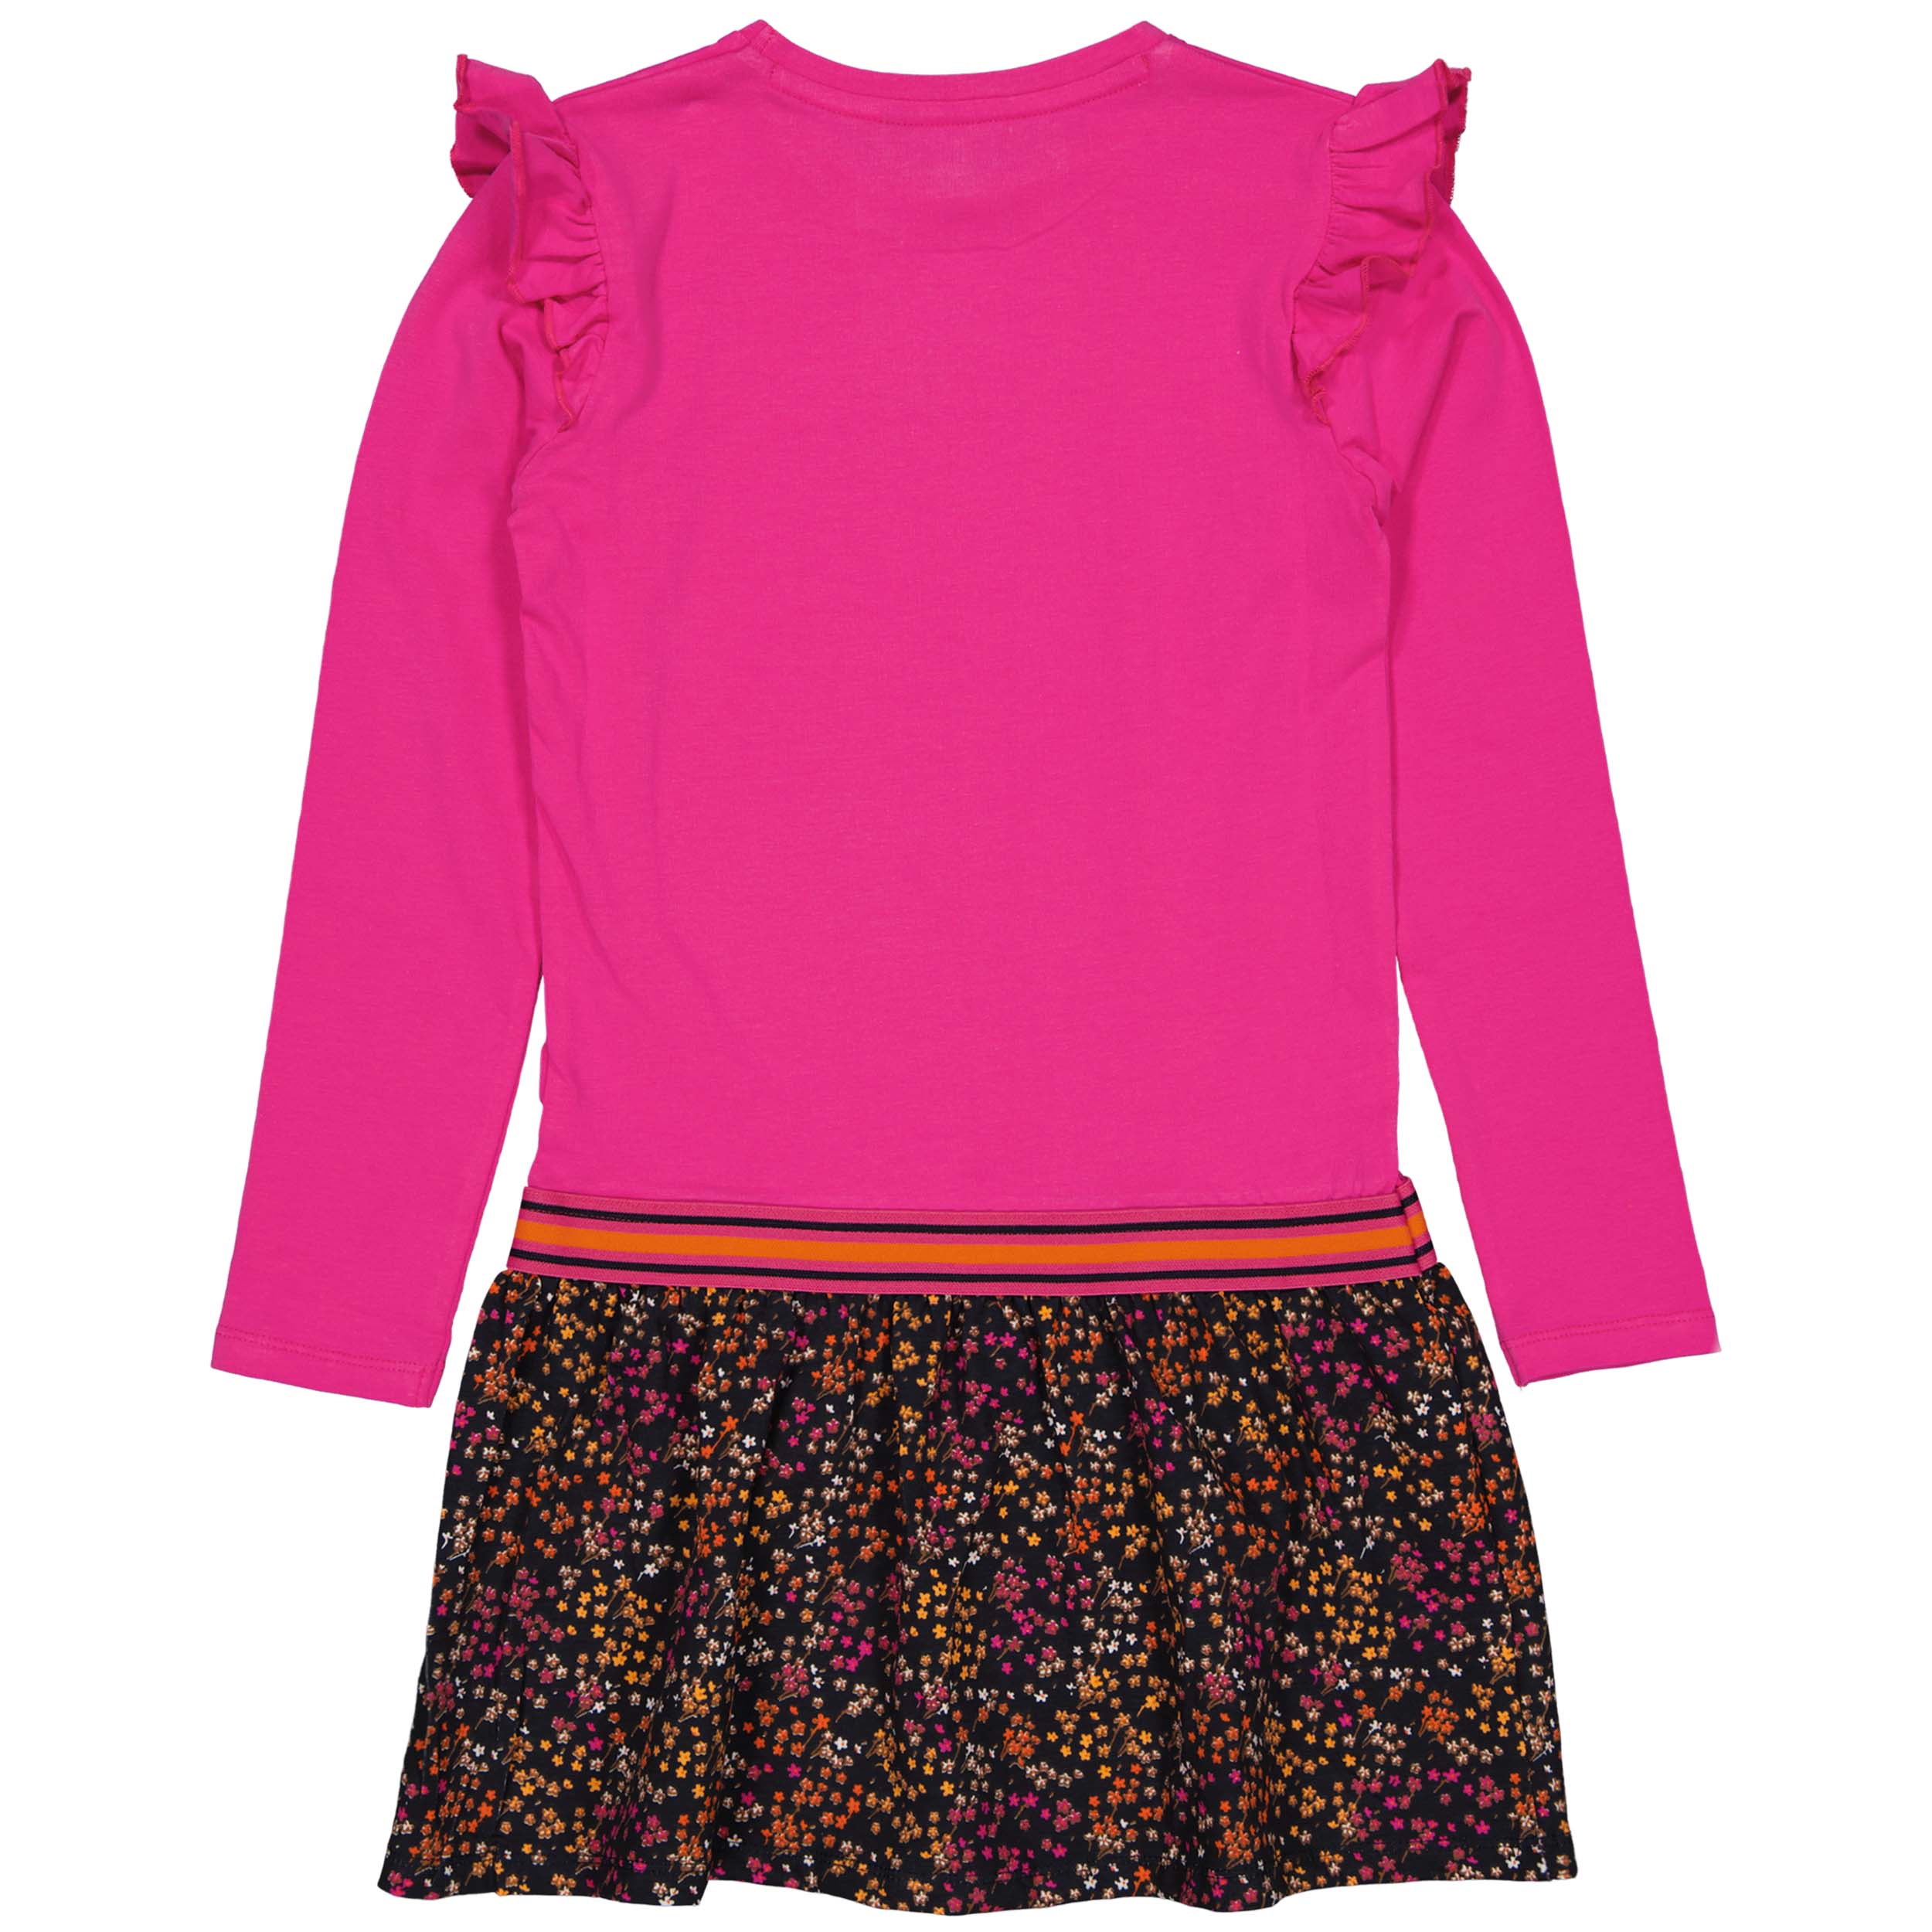 Meisjes Dress RAISAW221 van Quapi in de kleur Pink Magenta in maat 98-104.